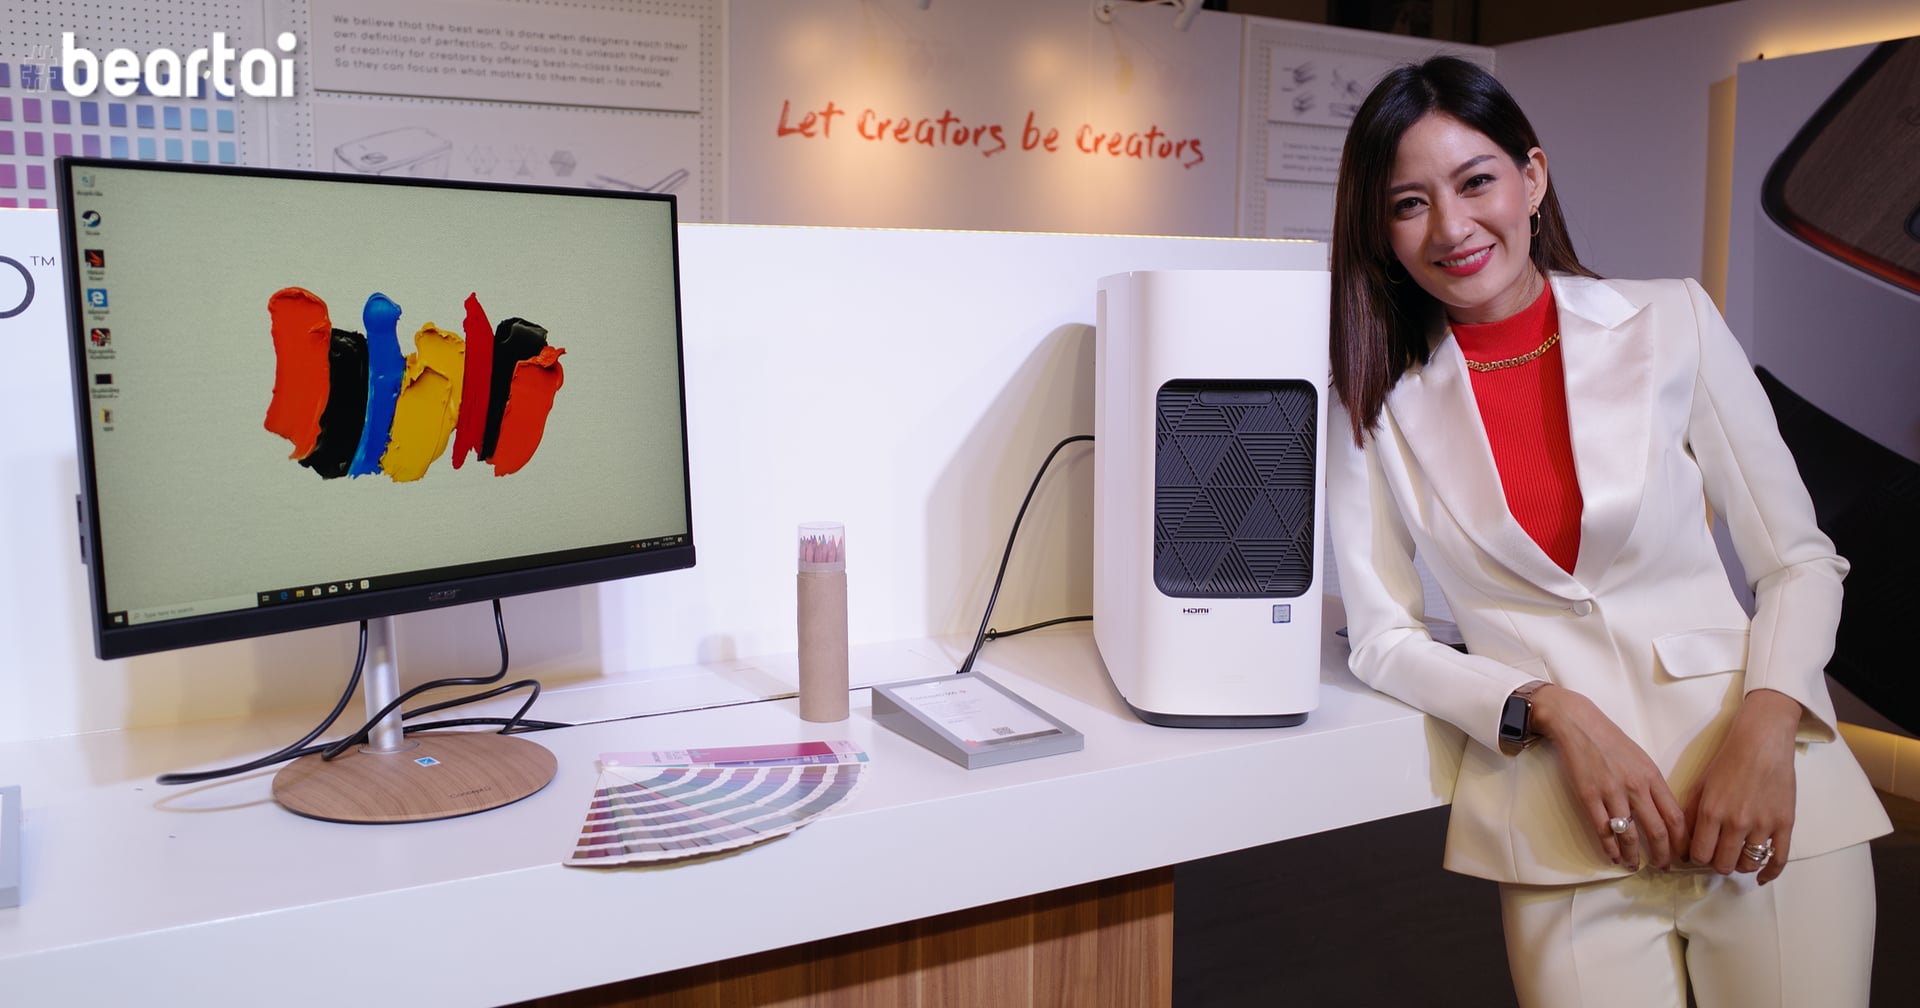 เปิดราคาไทย ConceptD คอมพิวเตอร์พันธุ์ใหม่จาก Acer ที่ออกแบบเพื่อผู้สร้างสรรค์งานมือโปรโดยเฉพาะ